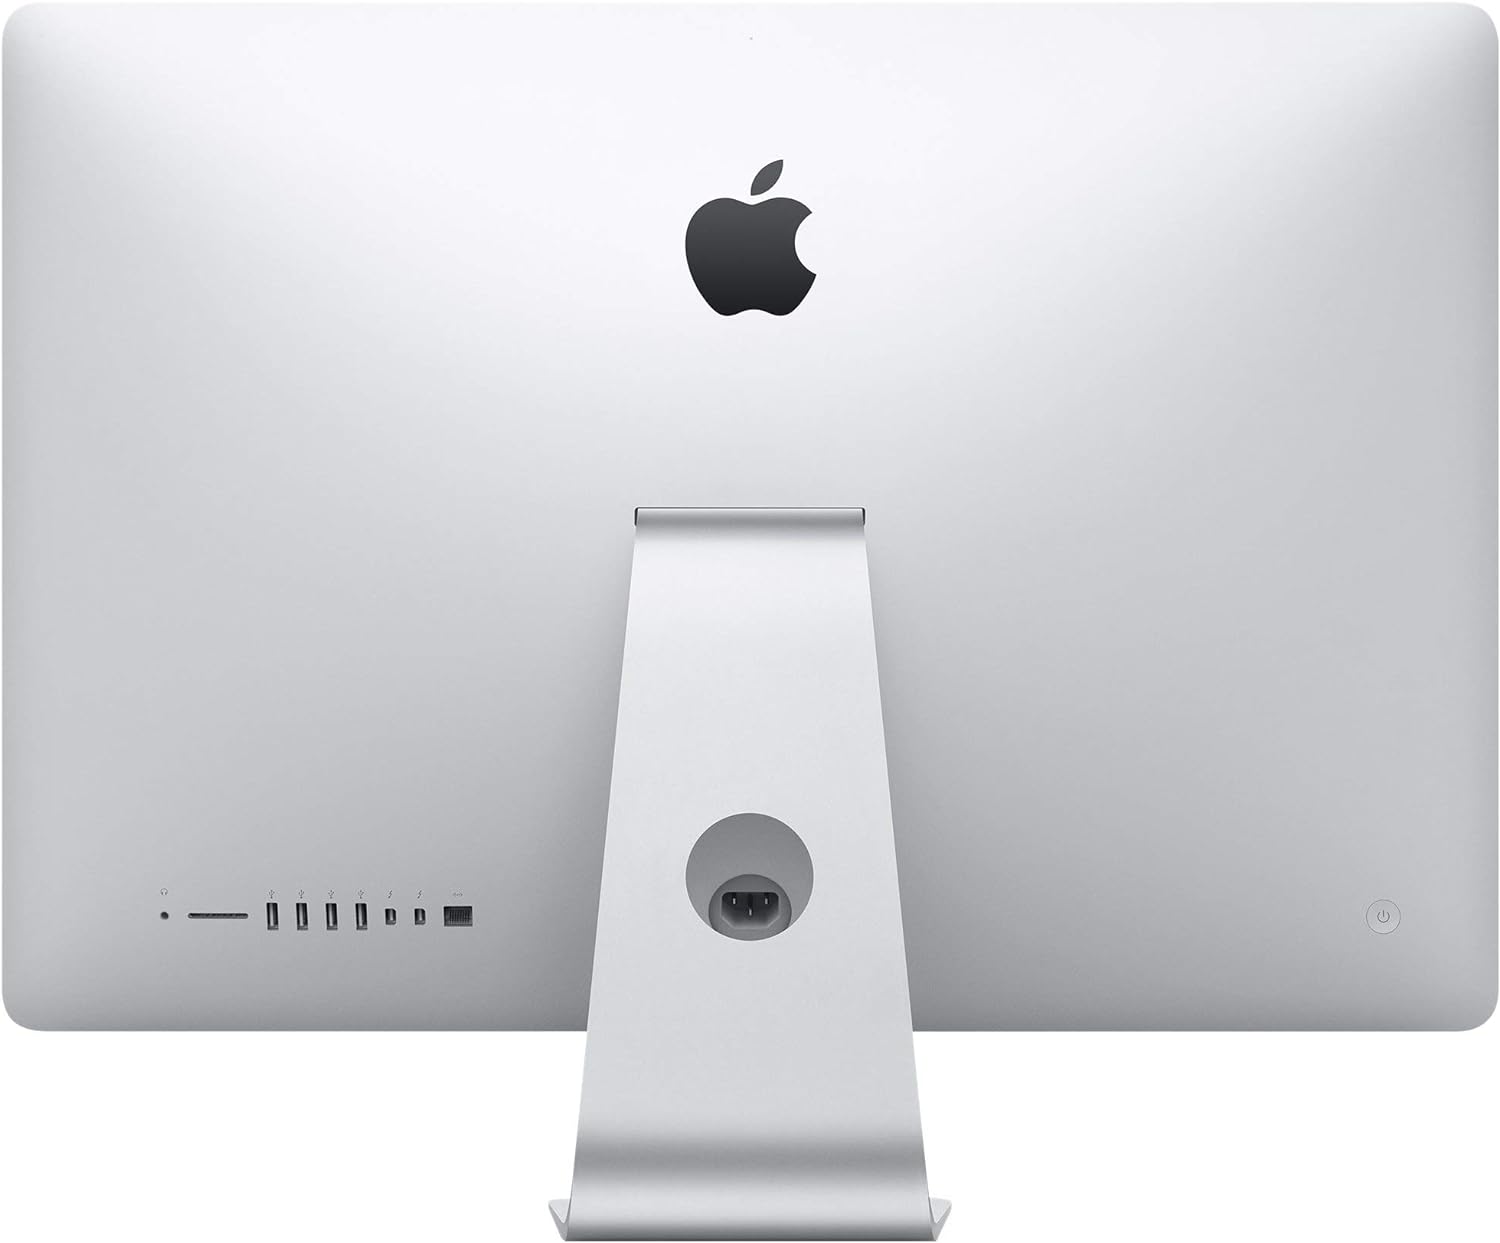 Apple iMac 27-inch Desktop Computer MK482LL/A - 3.2GHz Intel Core i5, 32GB RAM, 1TB HDD - Silver (Renewed)